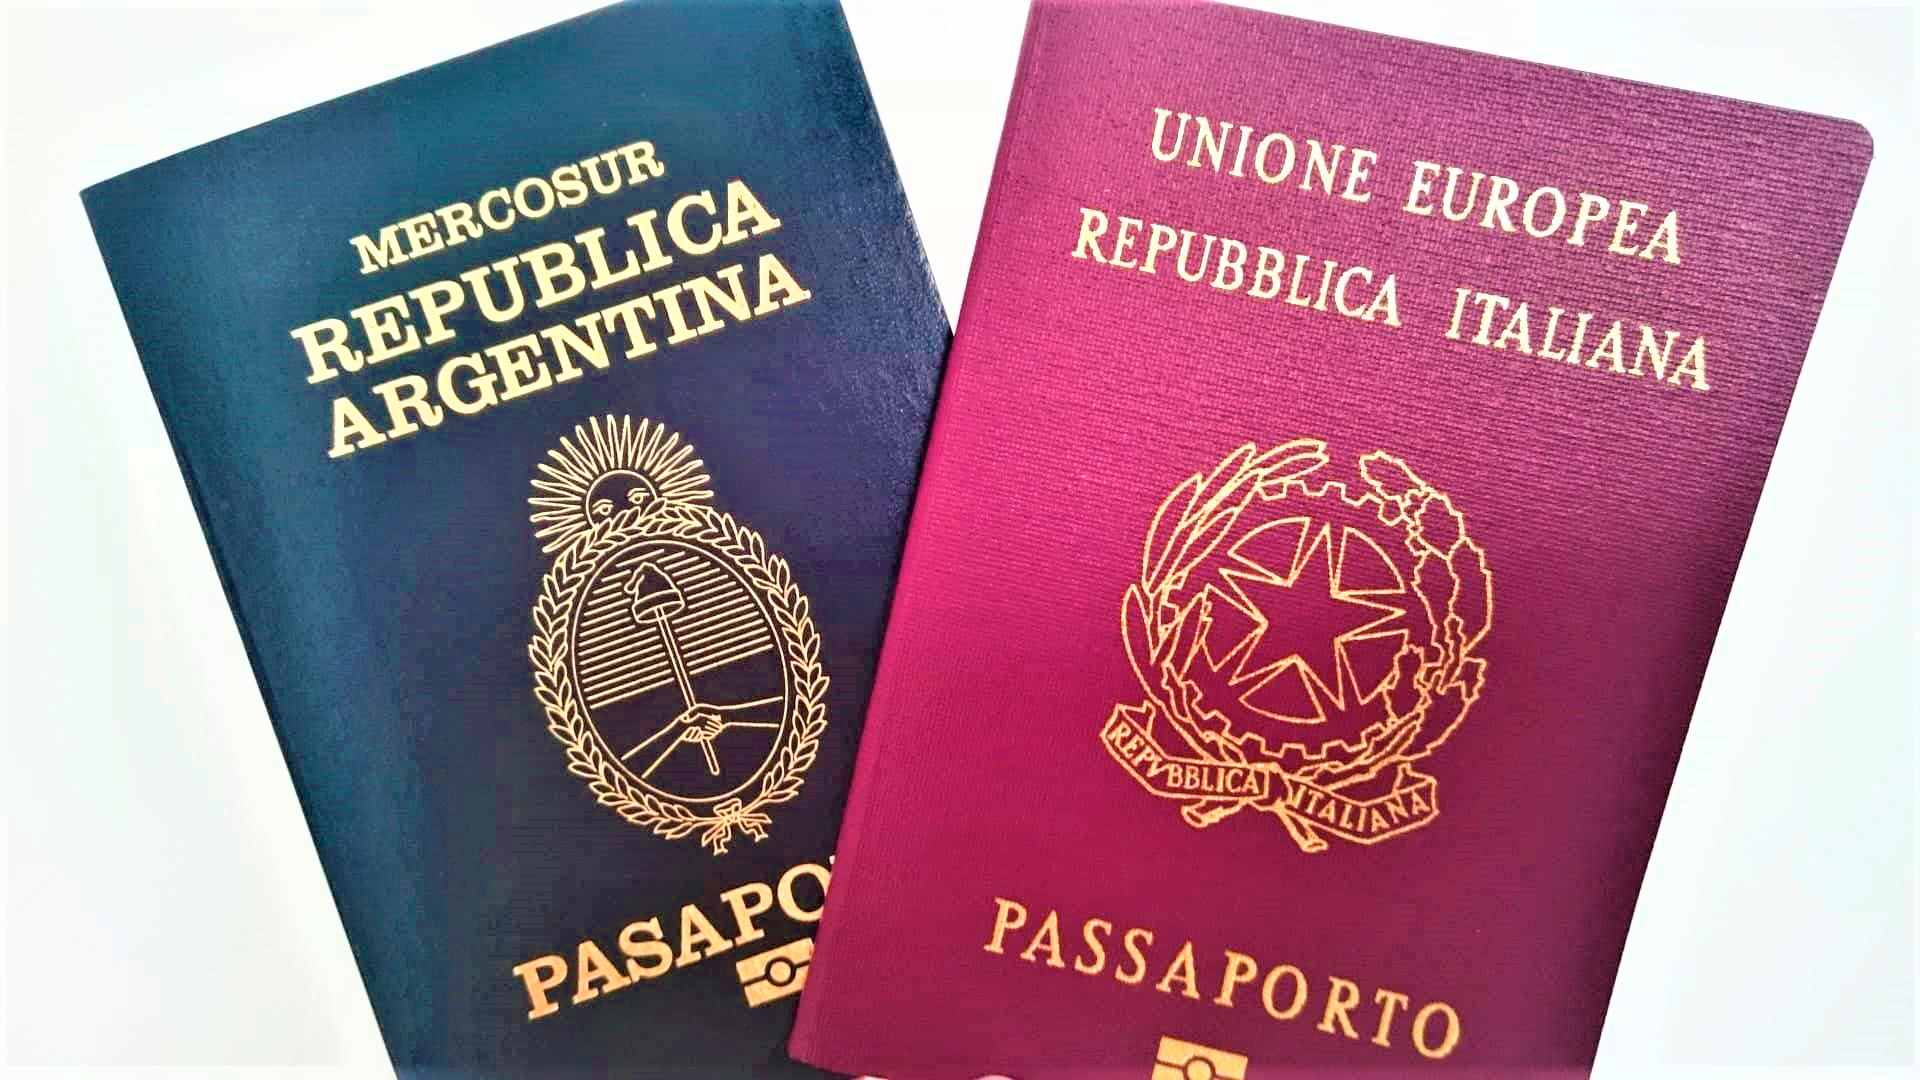 La ricostruzione della cittadinanza entro la fine dell'anno costerà $ 40.430, mentre il rilascio di un passaporto costerà $ 15.640